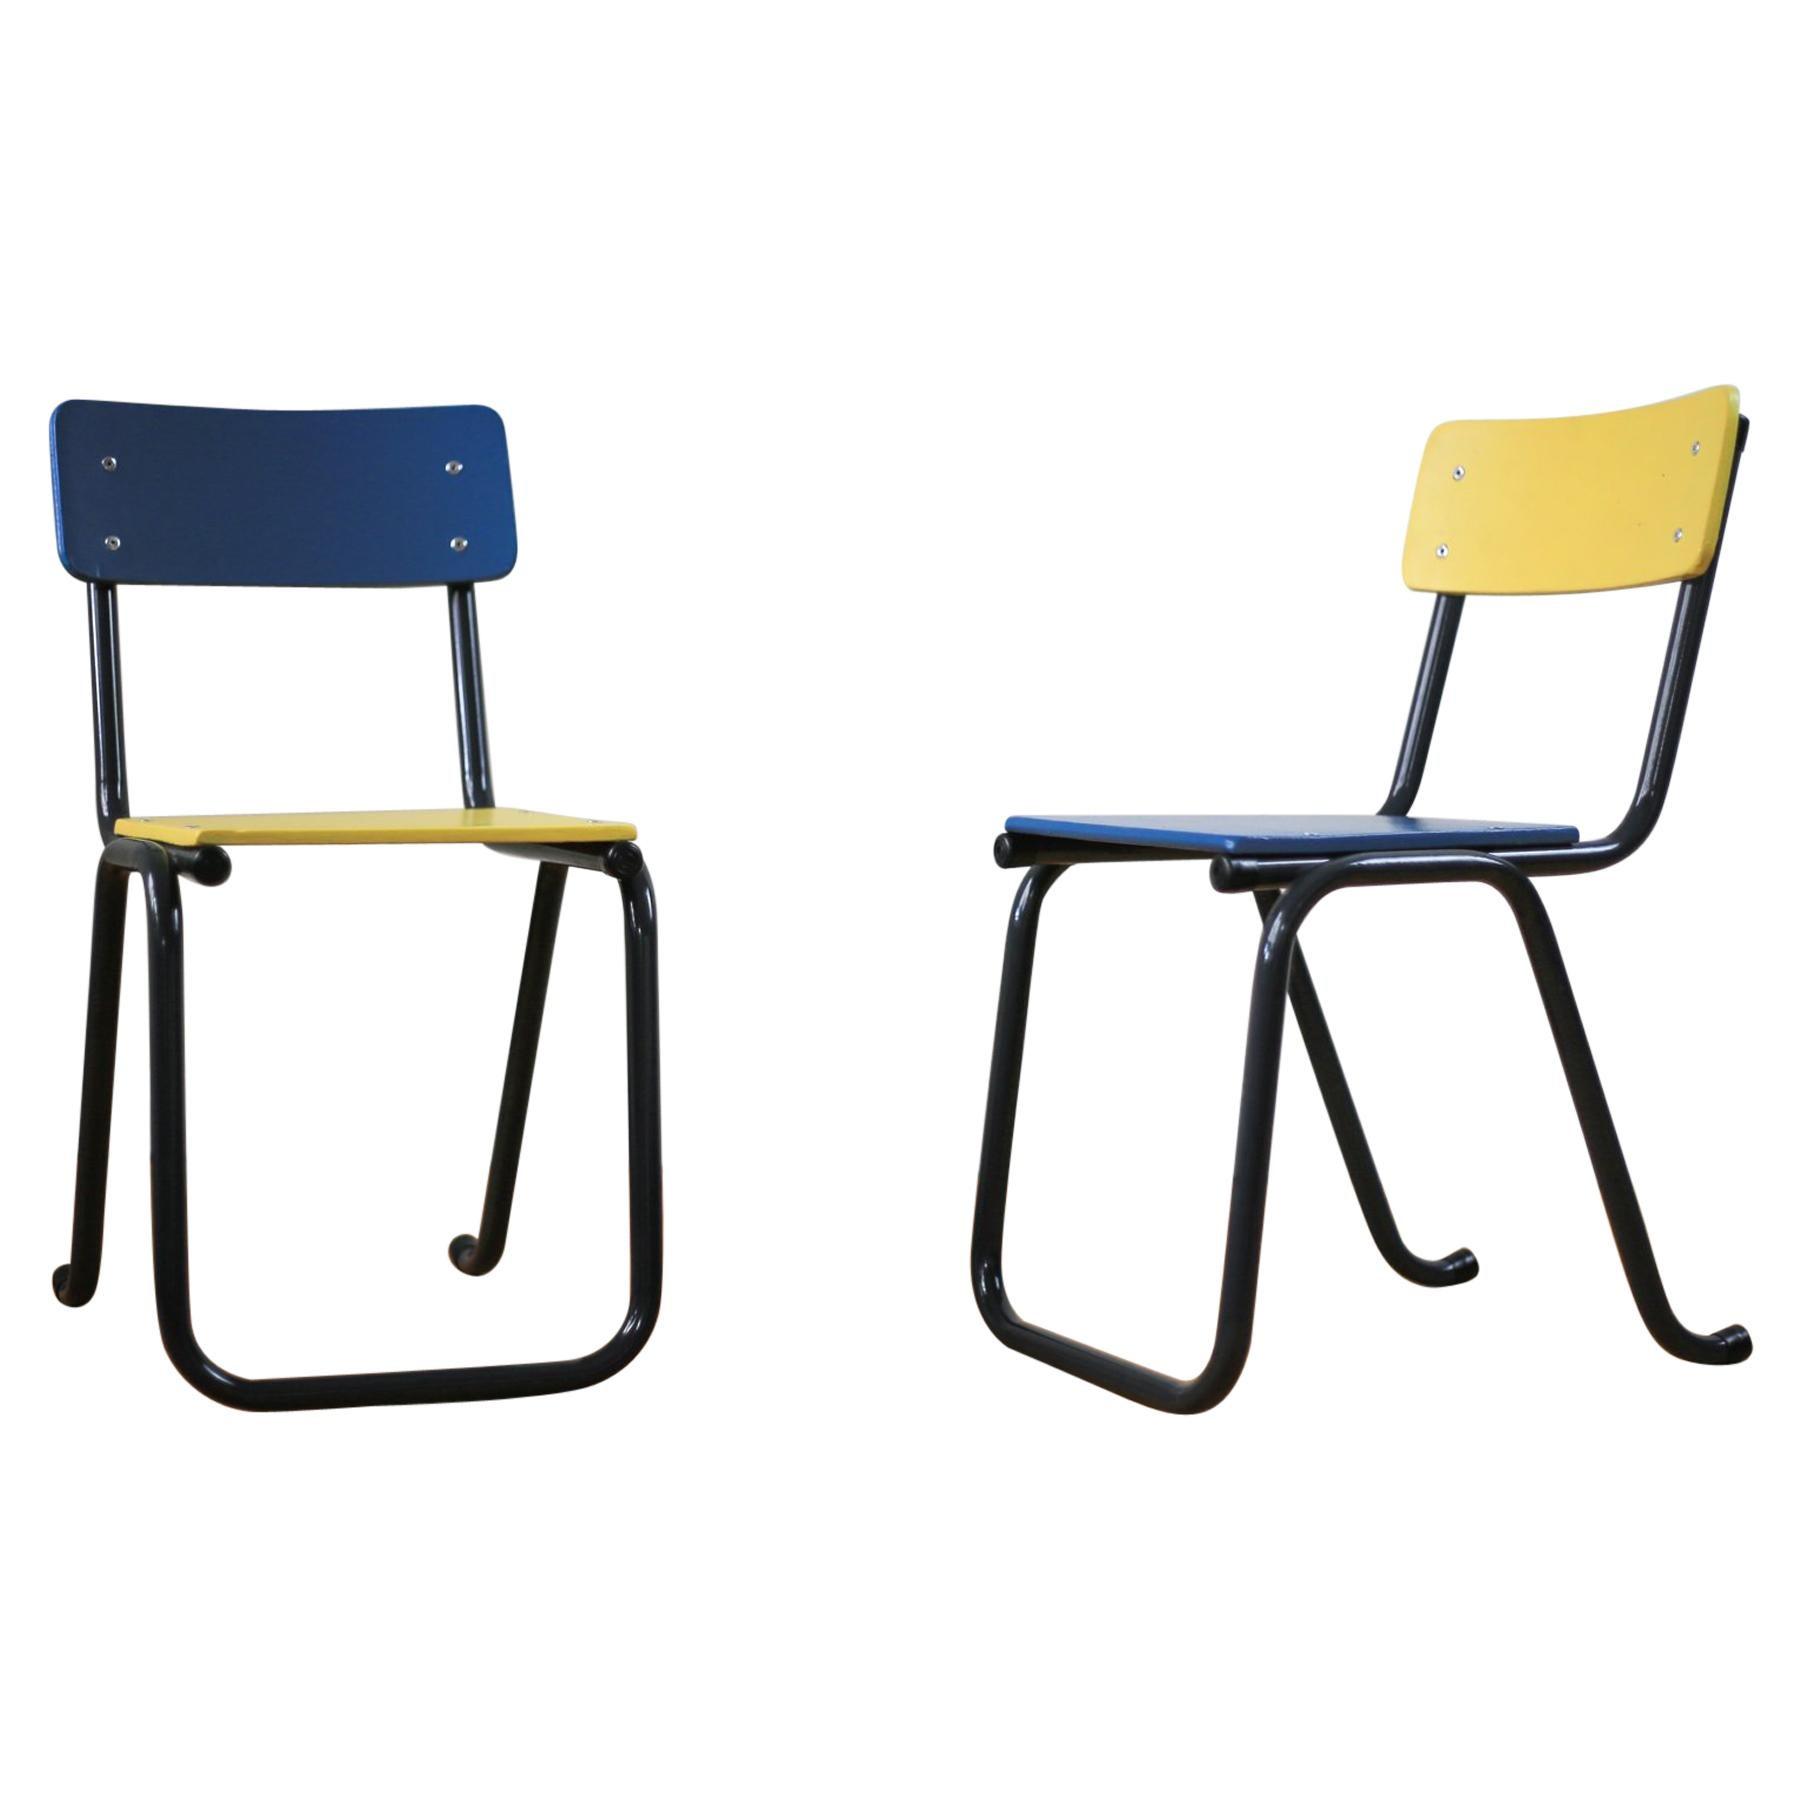 Refurbished Midcentury Nursery School Chairs For Sale